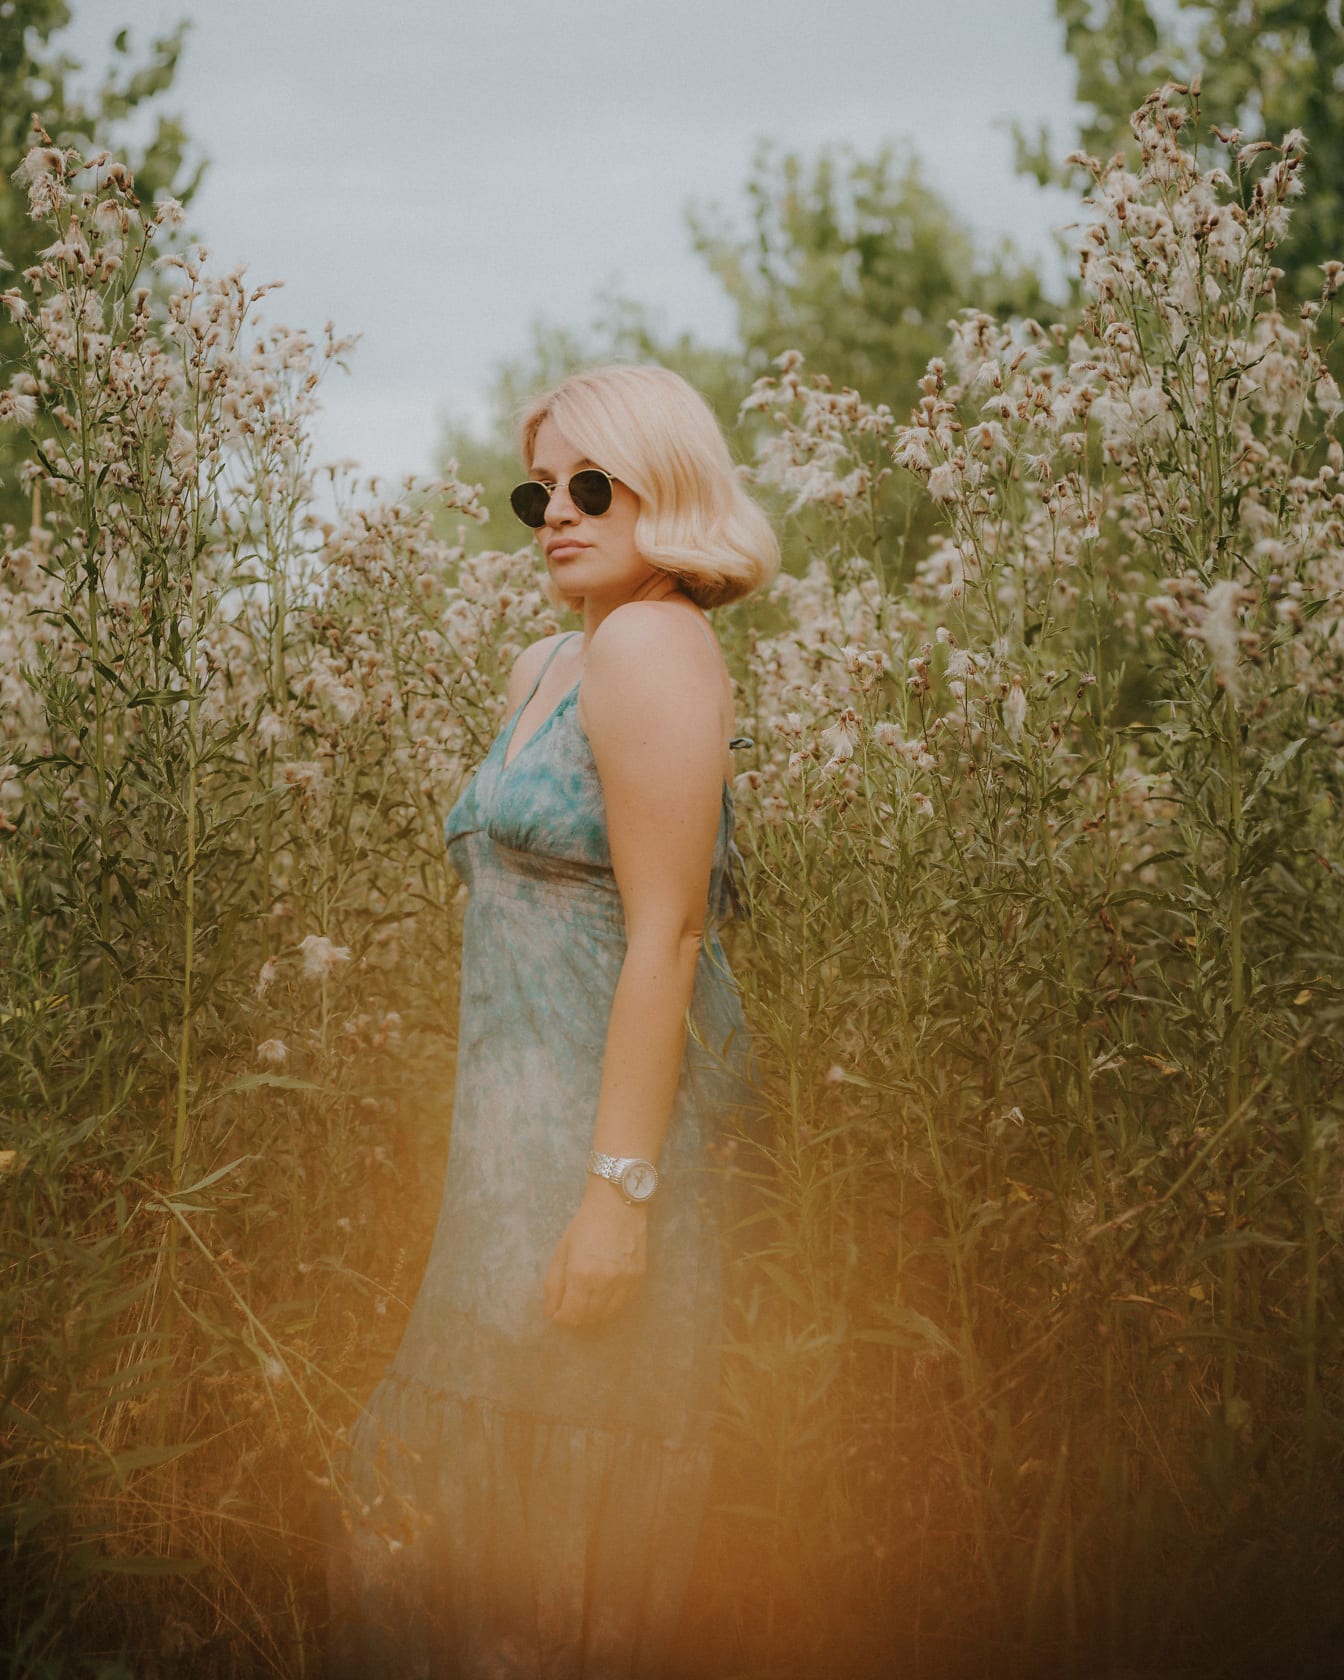 Cô gái tóc vàng quyến rũ trong chiếc váy cotton màu xanh lá cây tạo dáng trên cỏ cao